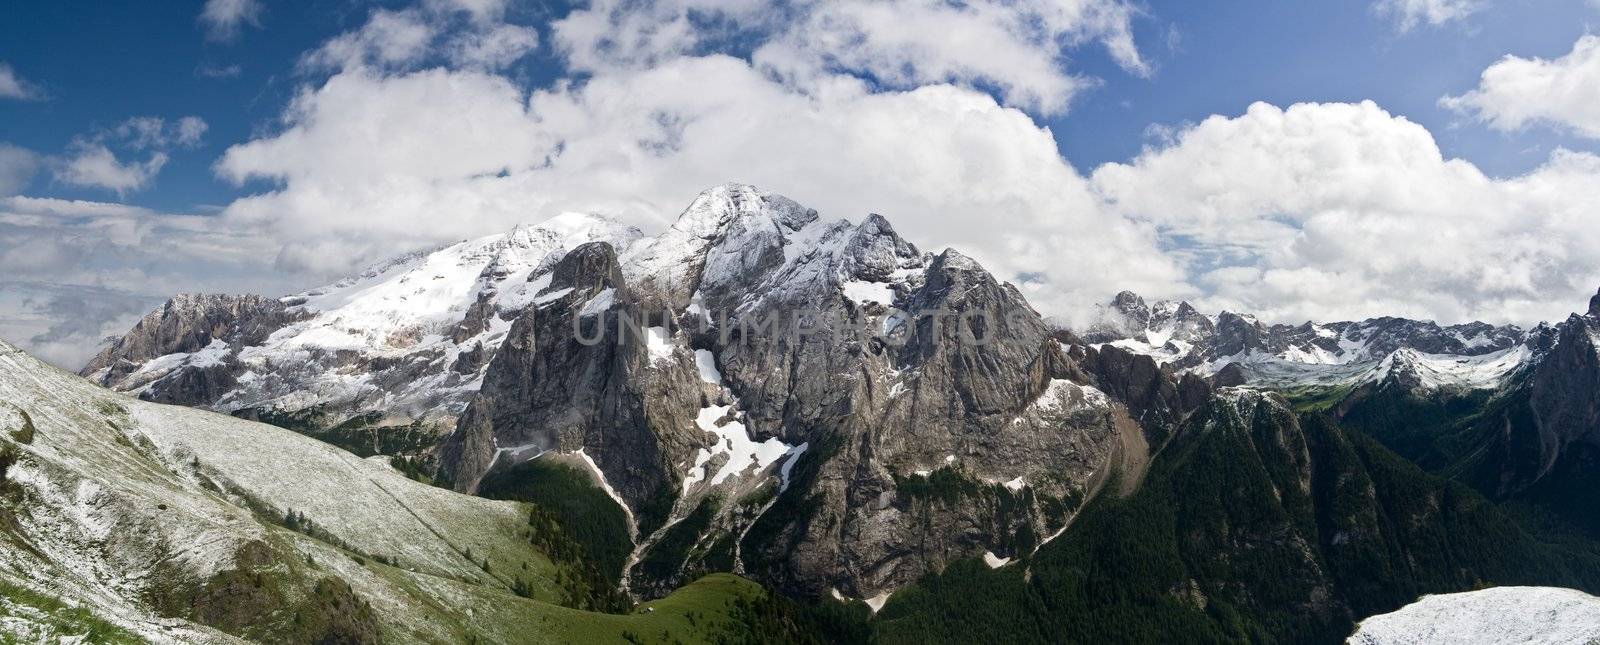 summer snow in Marmolada, famous dolomites mountain, Trentino, Italy. Photo taken with polarizer filter